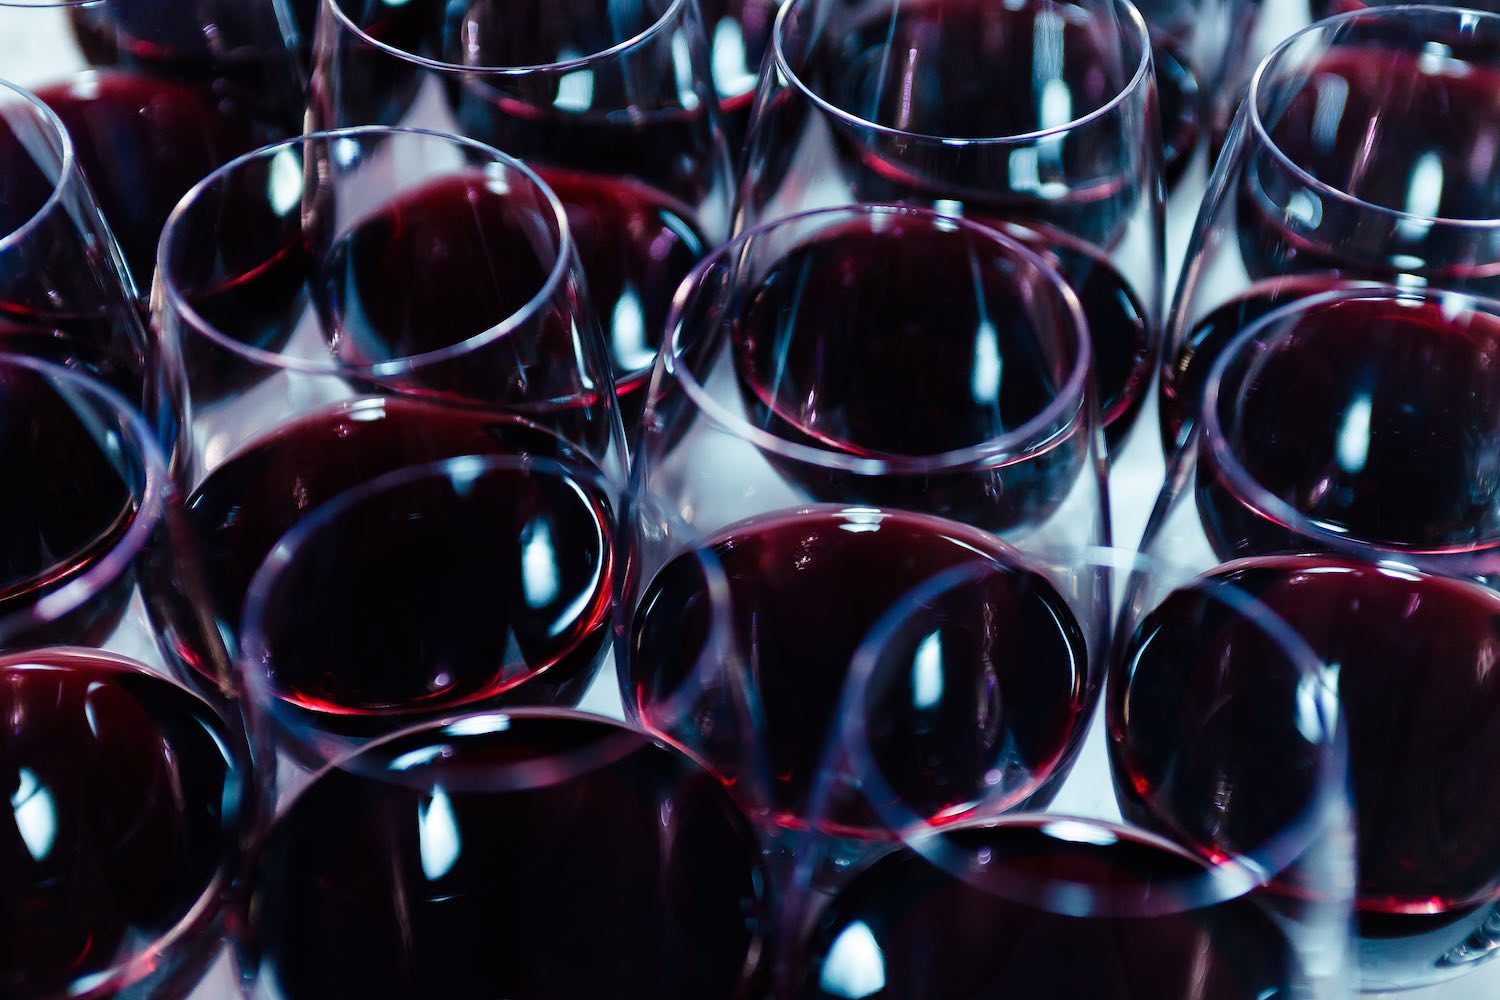 Masseto 2015 Frescobaldi e Solaia 2015 Antinori hanno ottenuto 100/100 da Wine Advocate di Roberto Parker, guru dell'enologia negli USA